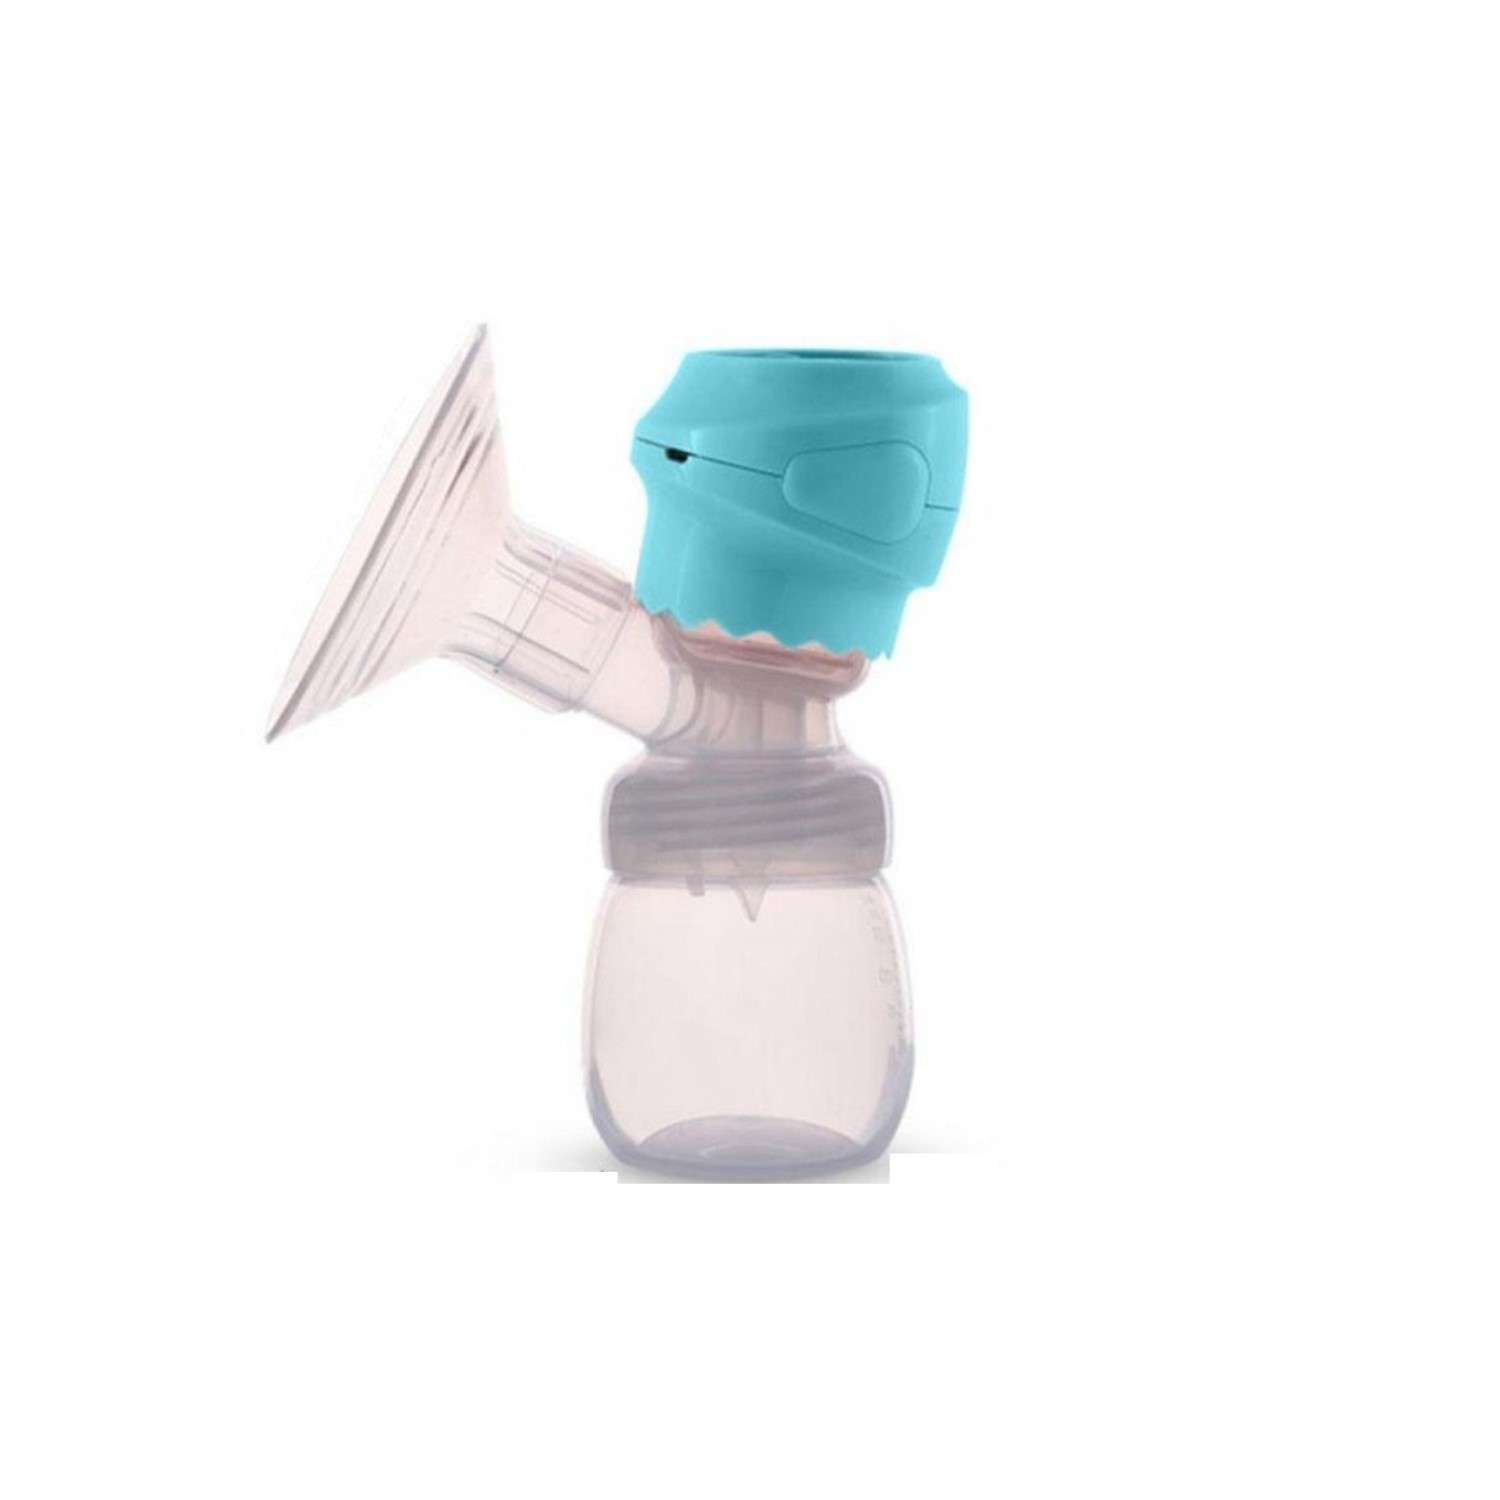 Электронный молокоотсос Rabizy для сцеживания молока голубой - фото 1